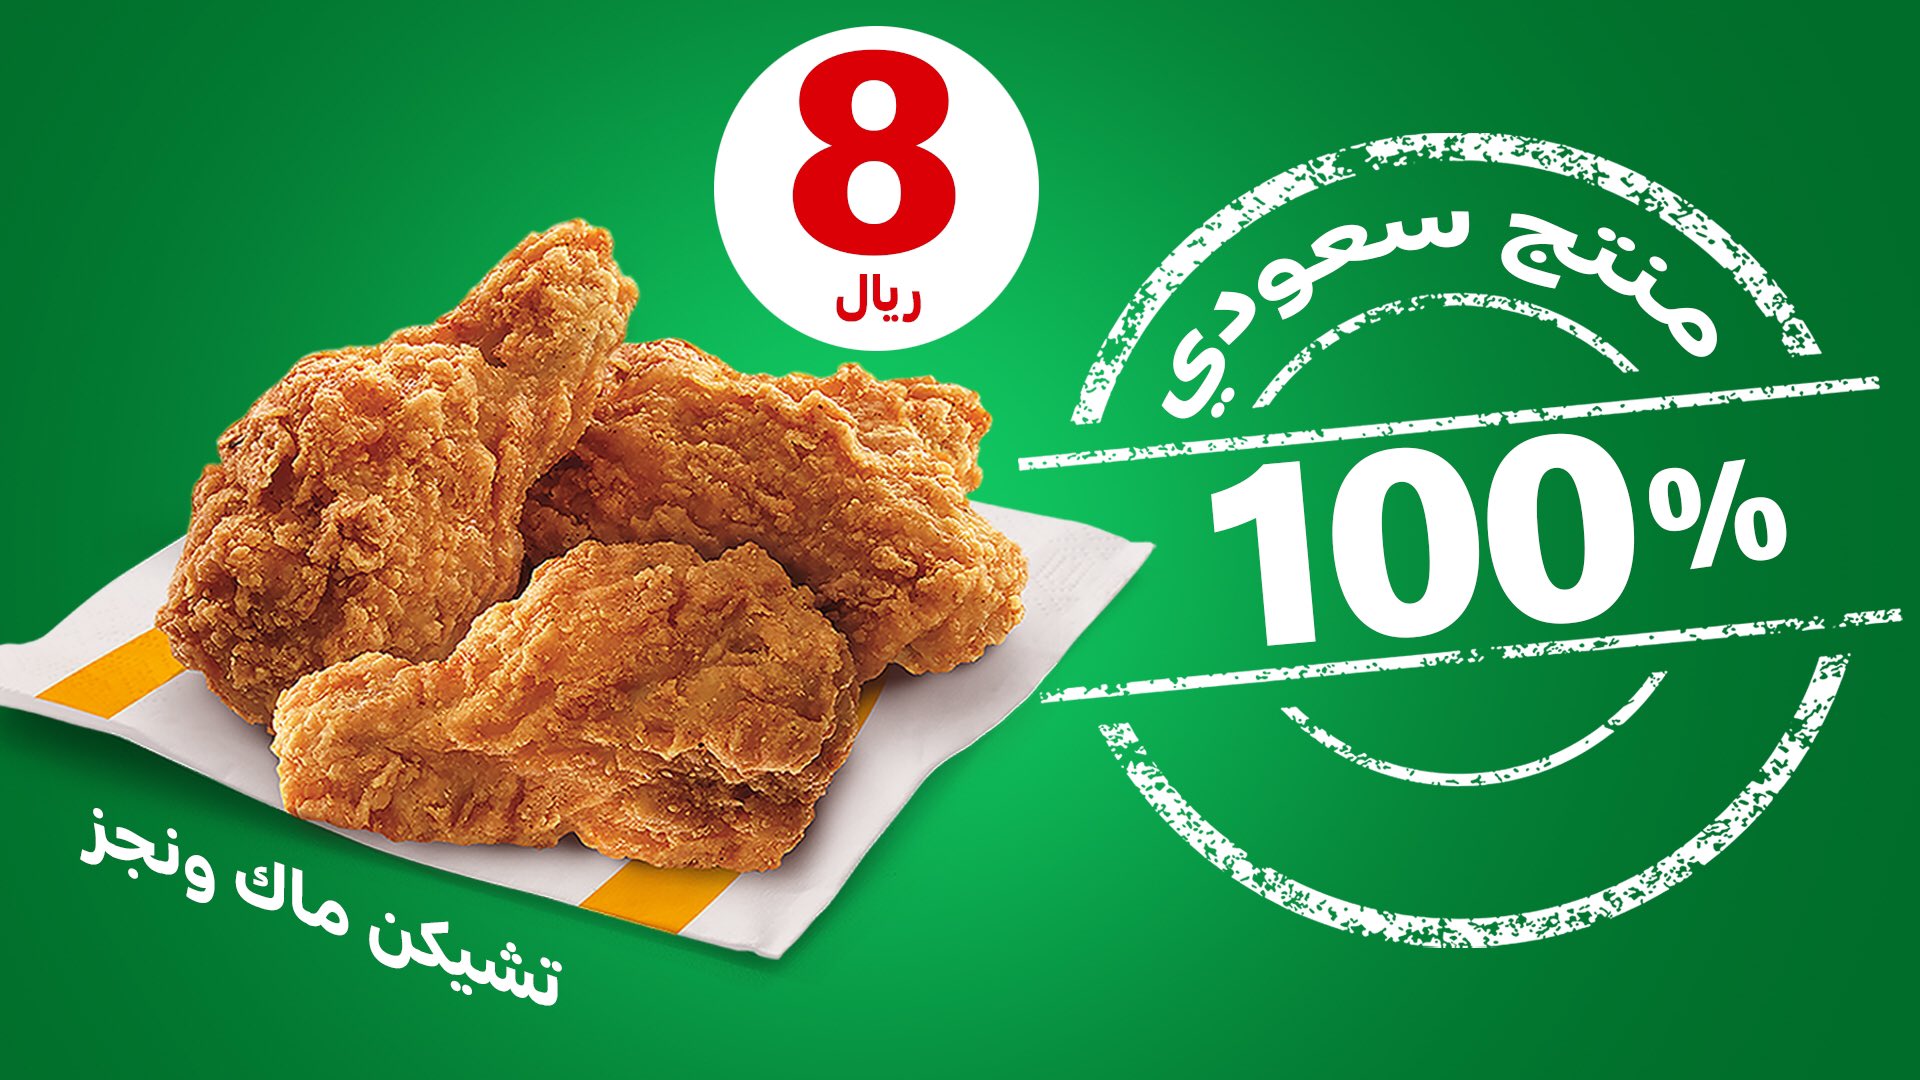 FIKTEsAXsAA9PLs - عروض المطاعم في مطعم ماكدونالدز السعودية - الوسطى والشرقية والشمالية